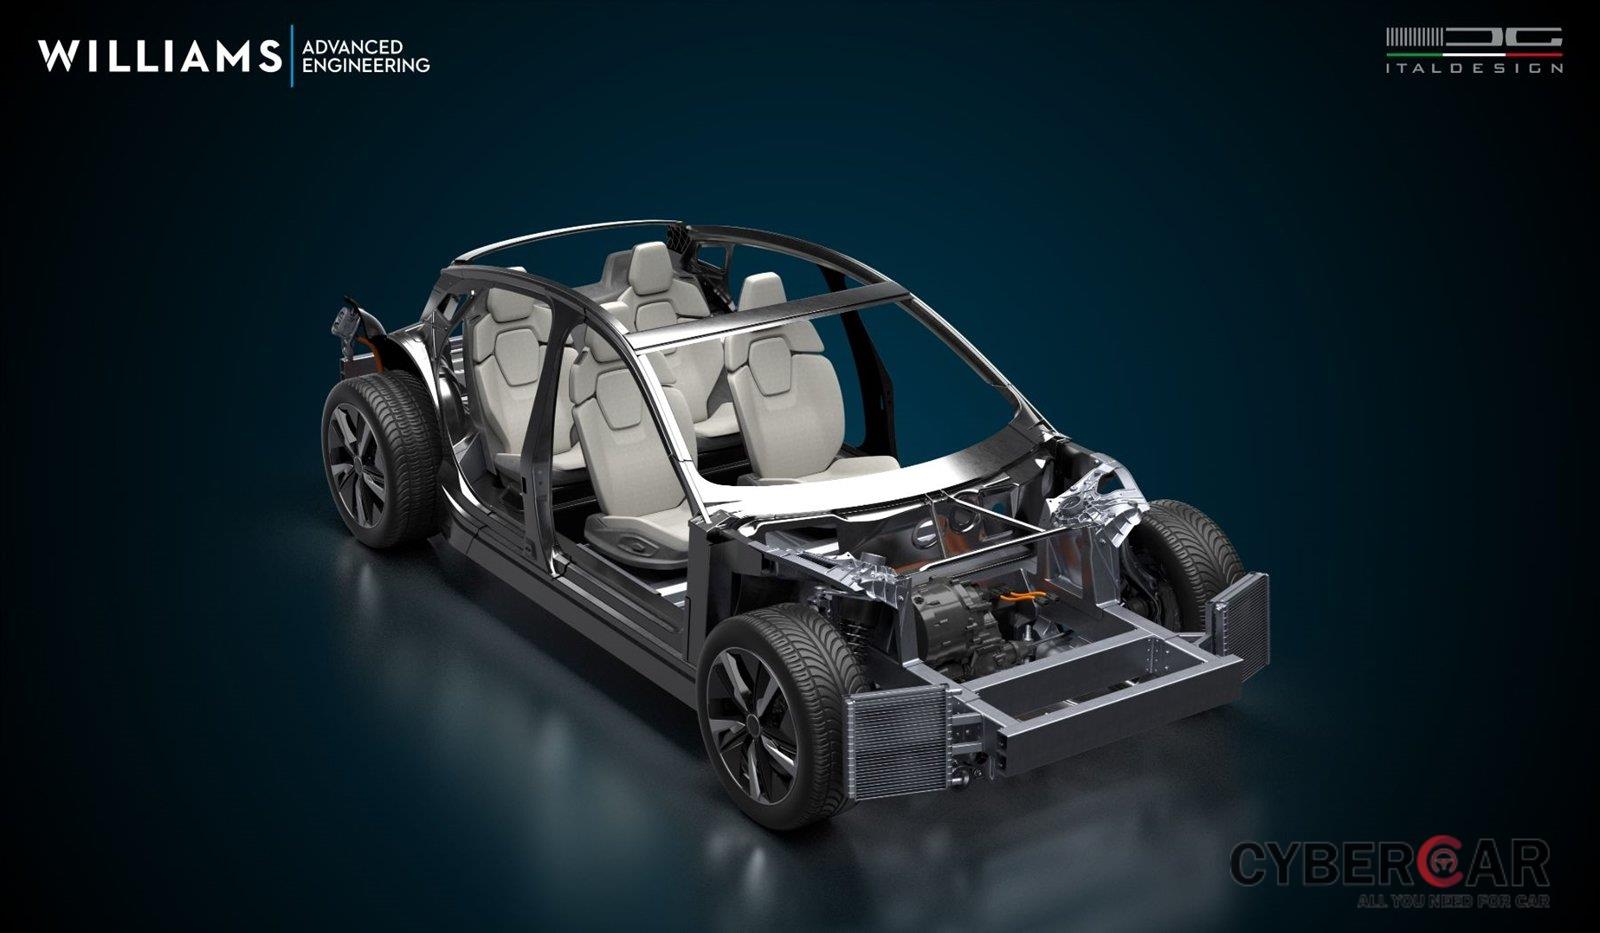 Italdesign sẽ chịu trách nhiệm thiết kế dáng xe theo yêu cầu của khách hàng